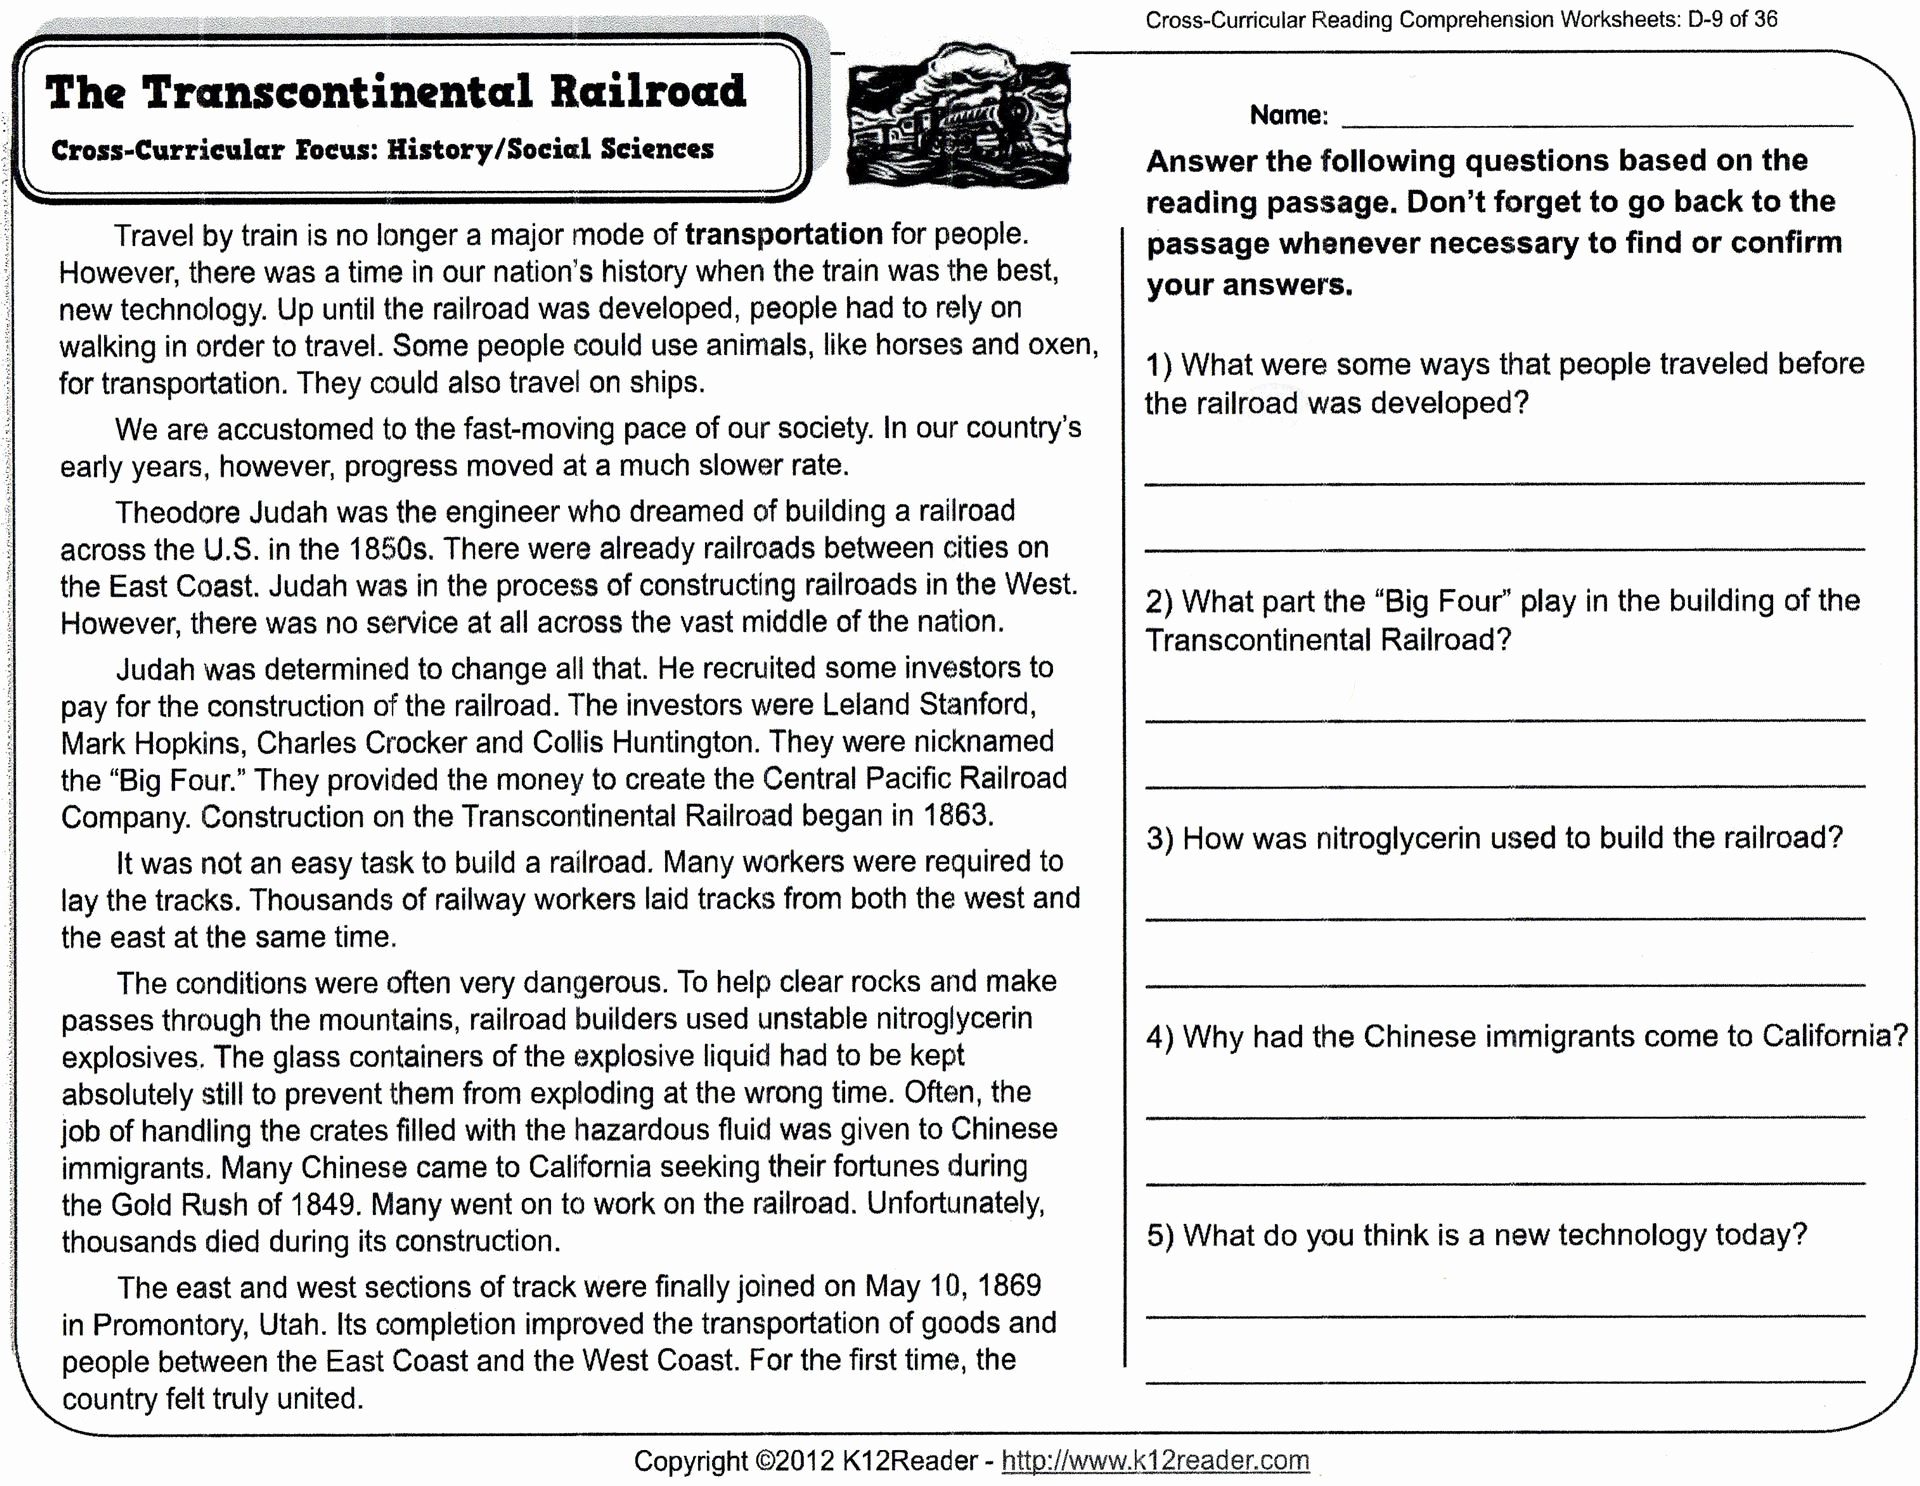 Free Printable Comprehension Worksheets For Grade 5